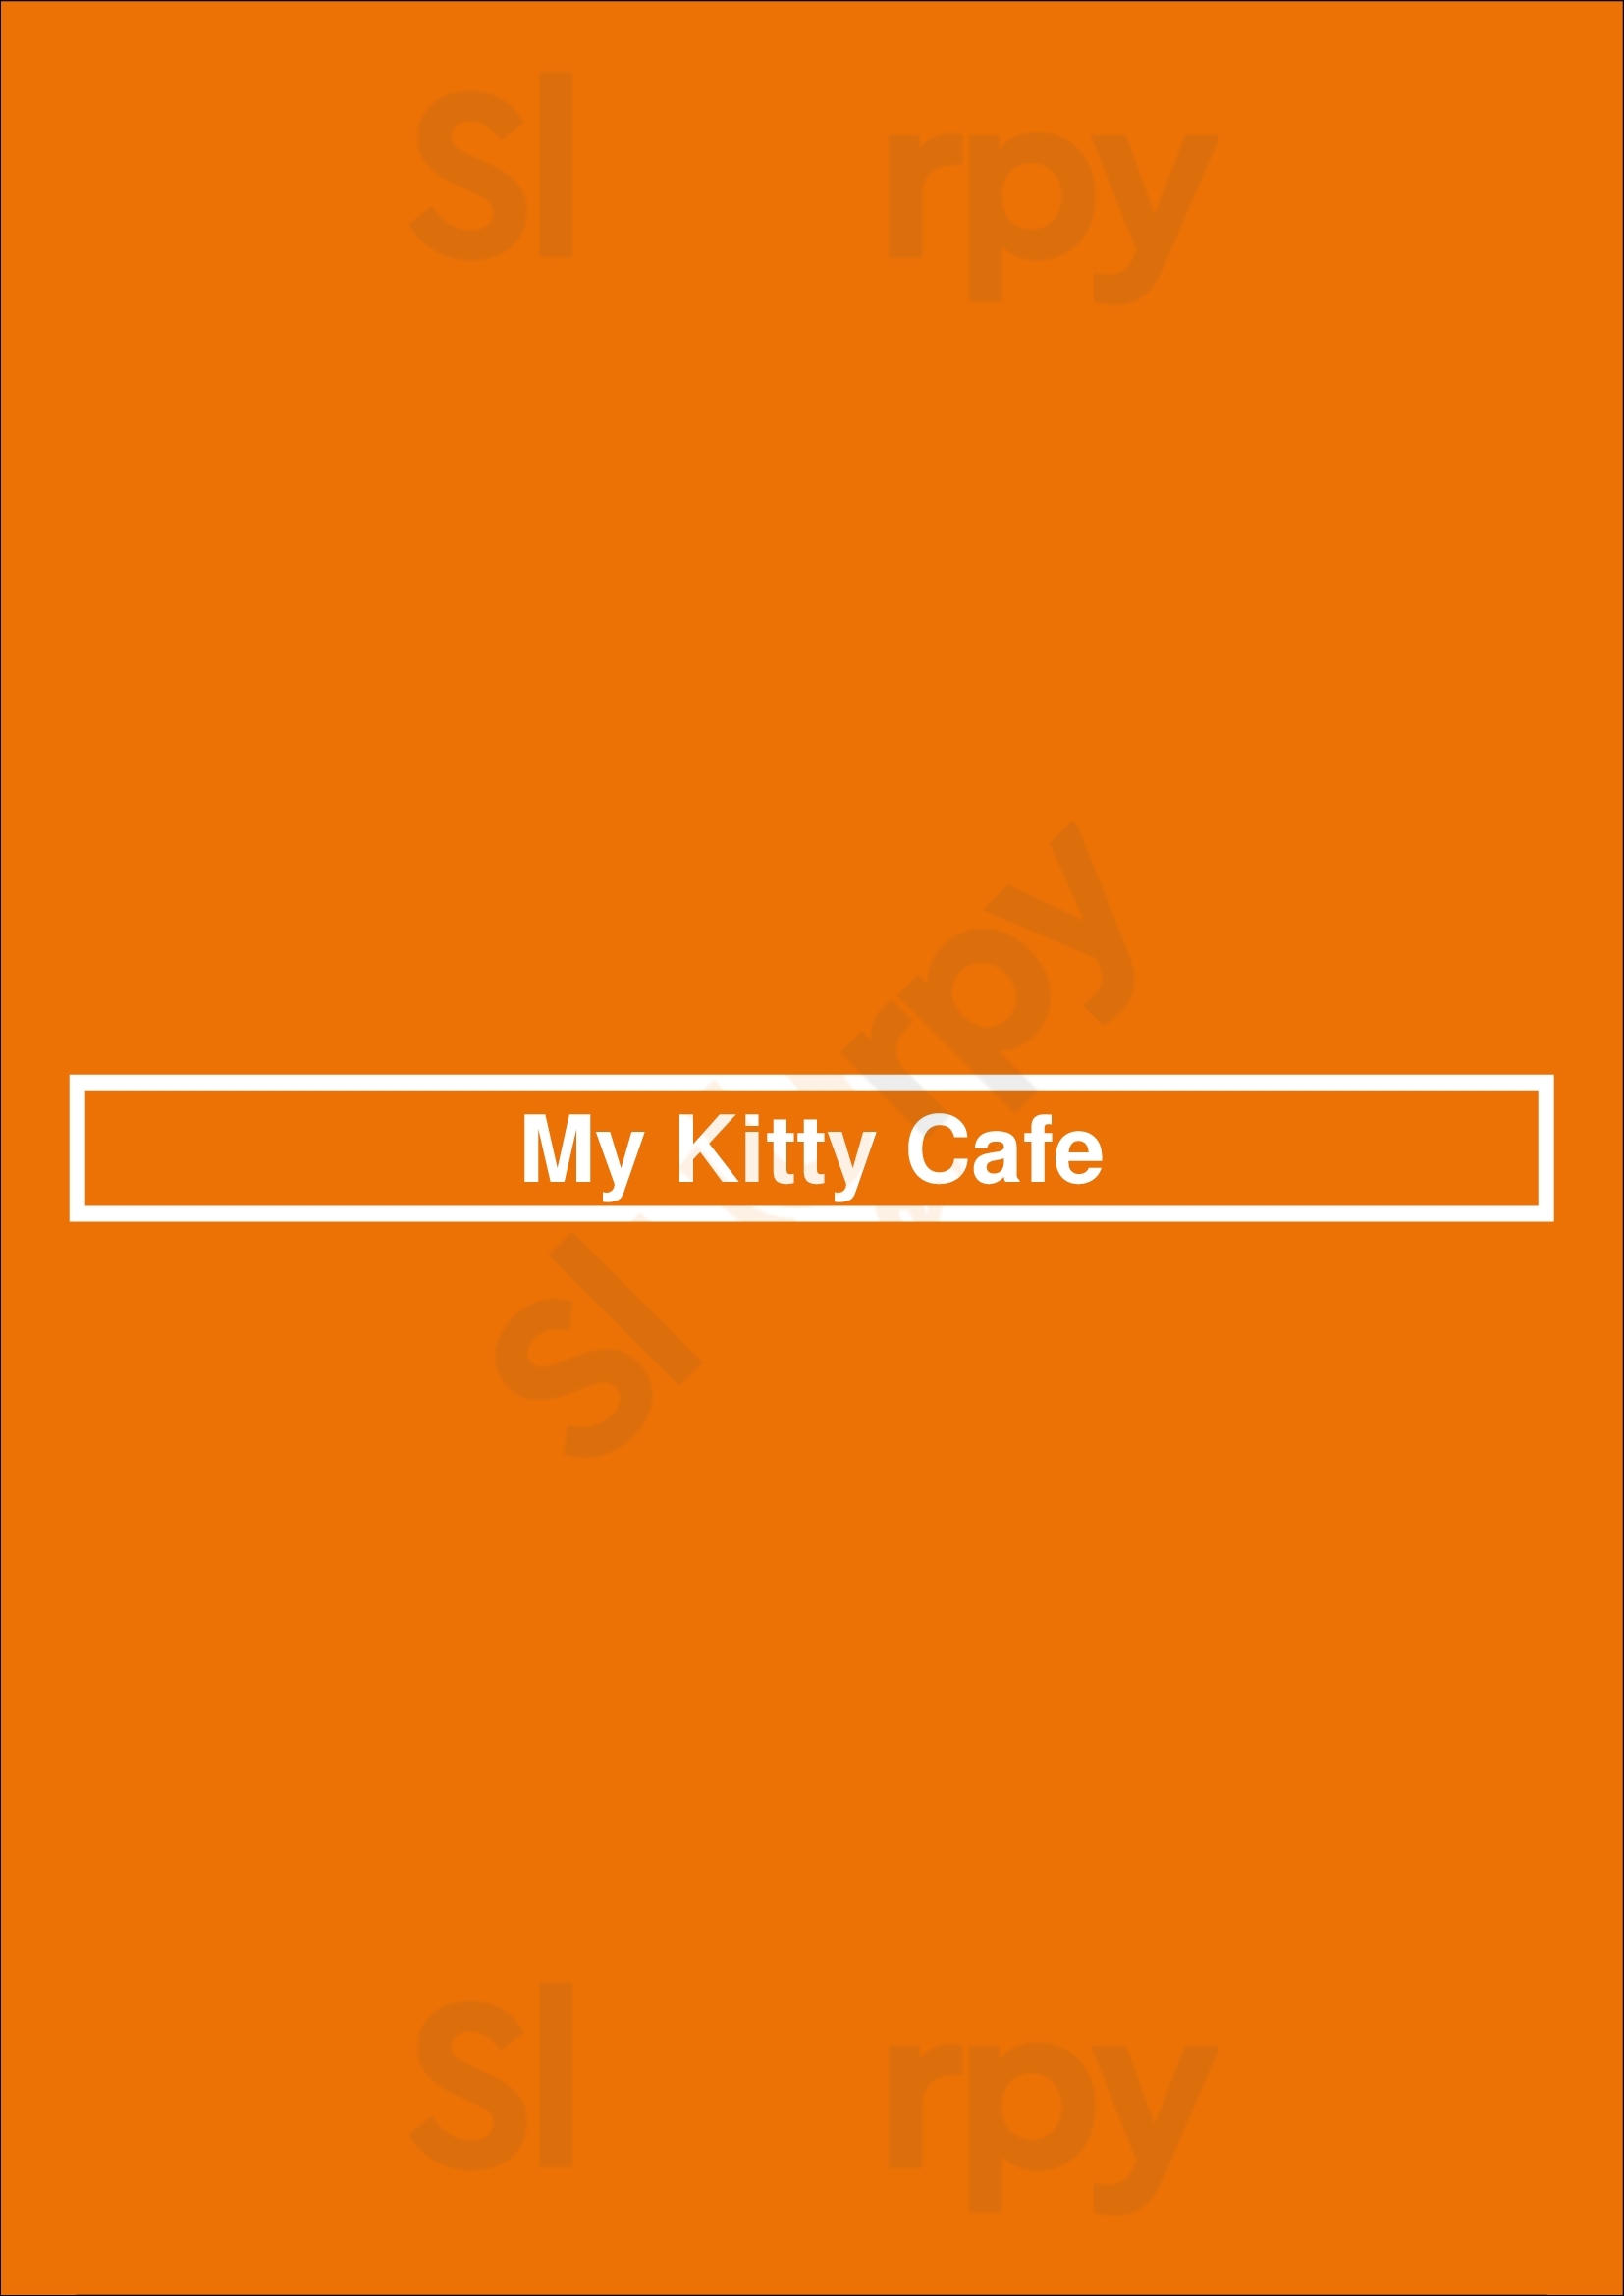 My Kitty Cafe Guelph Menu - 1